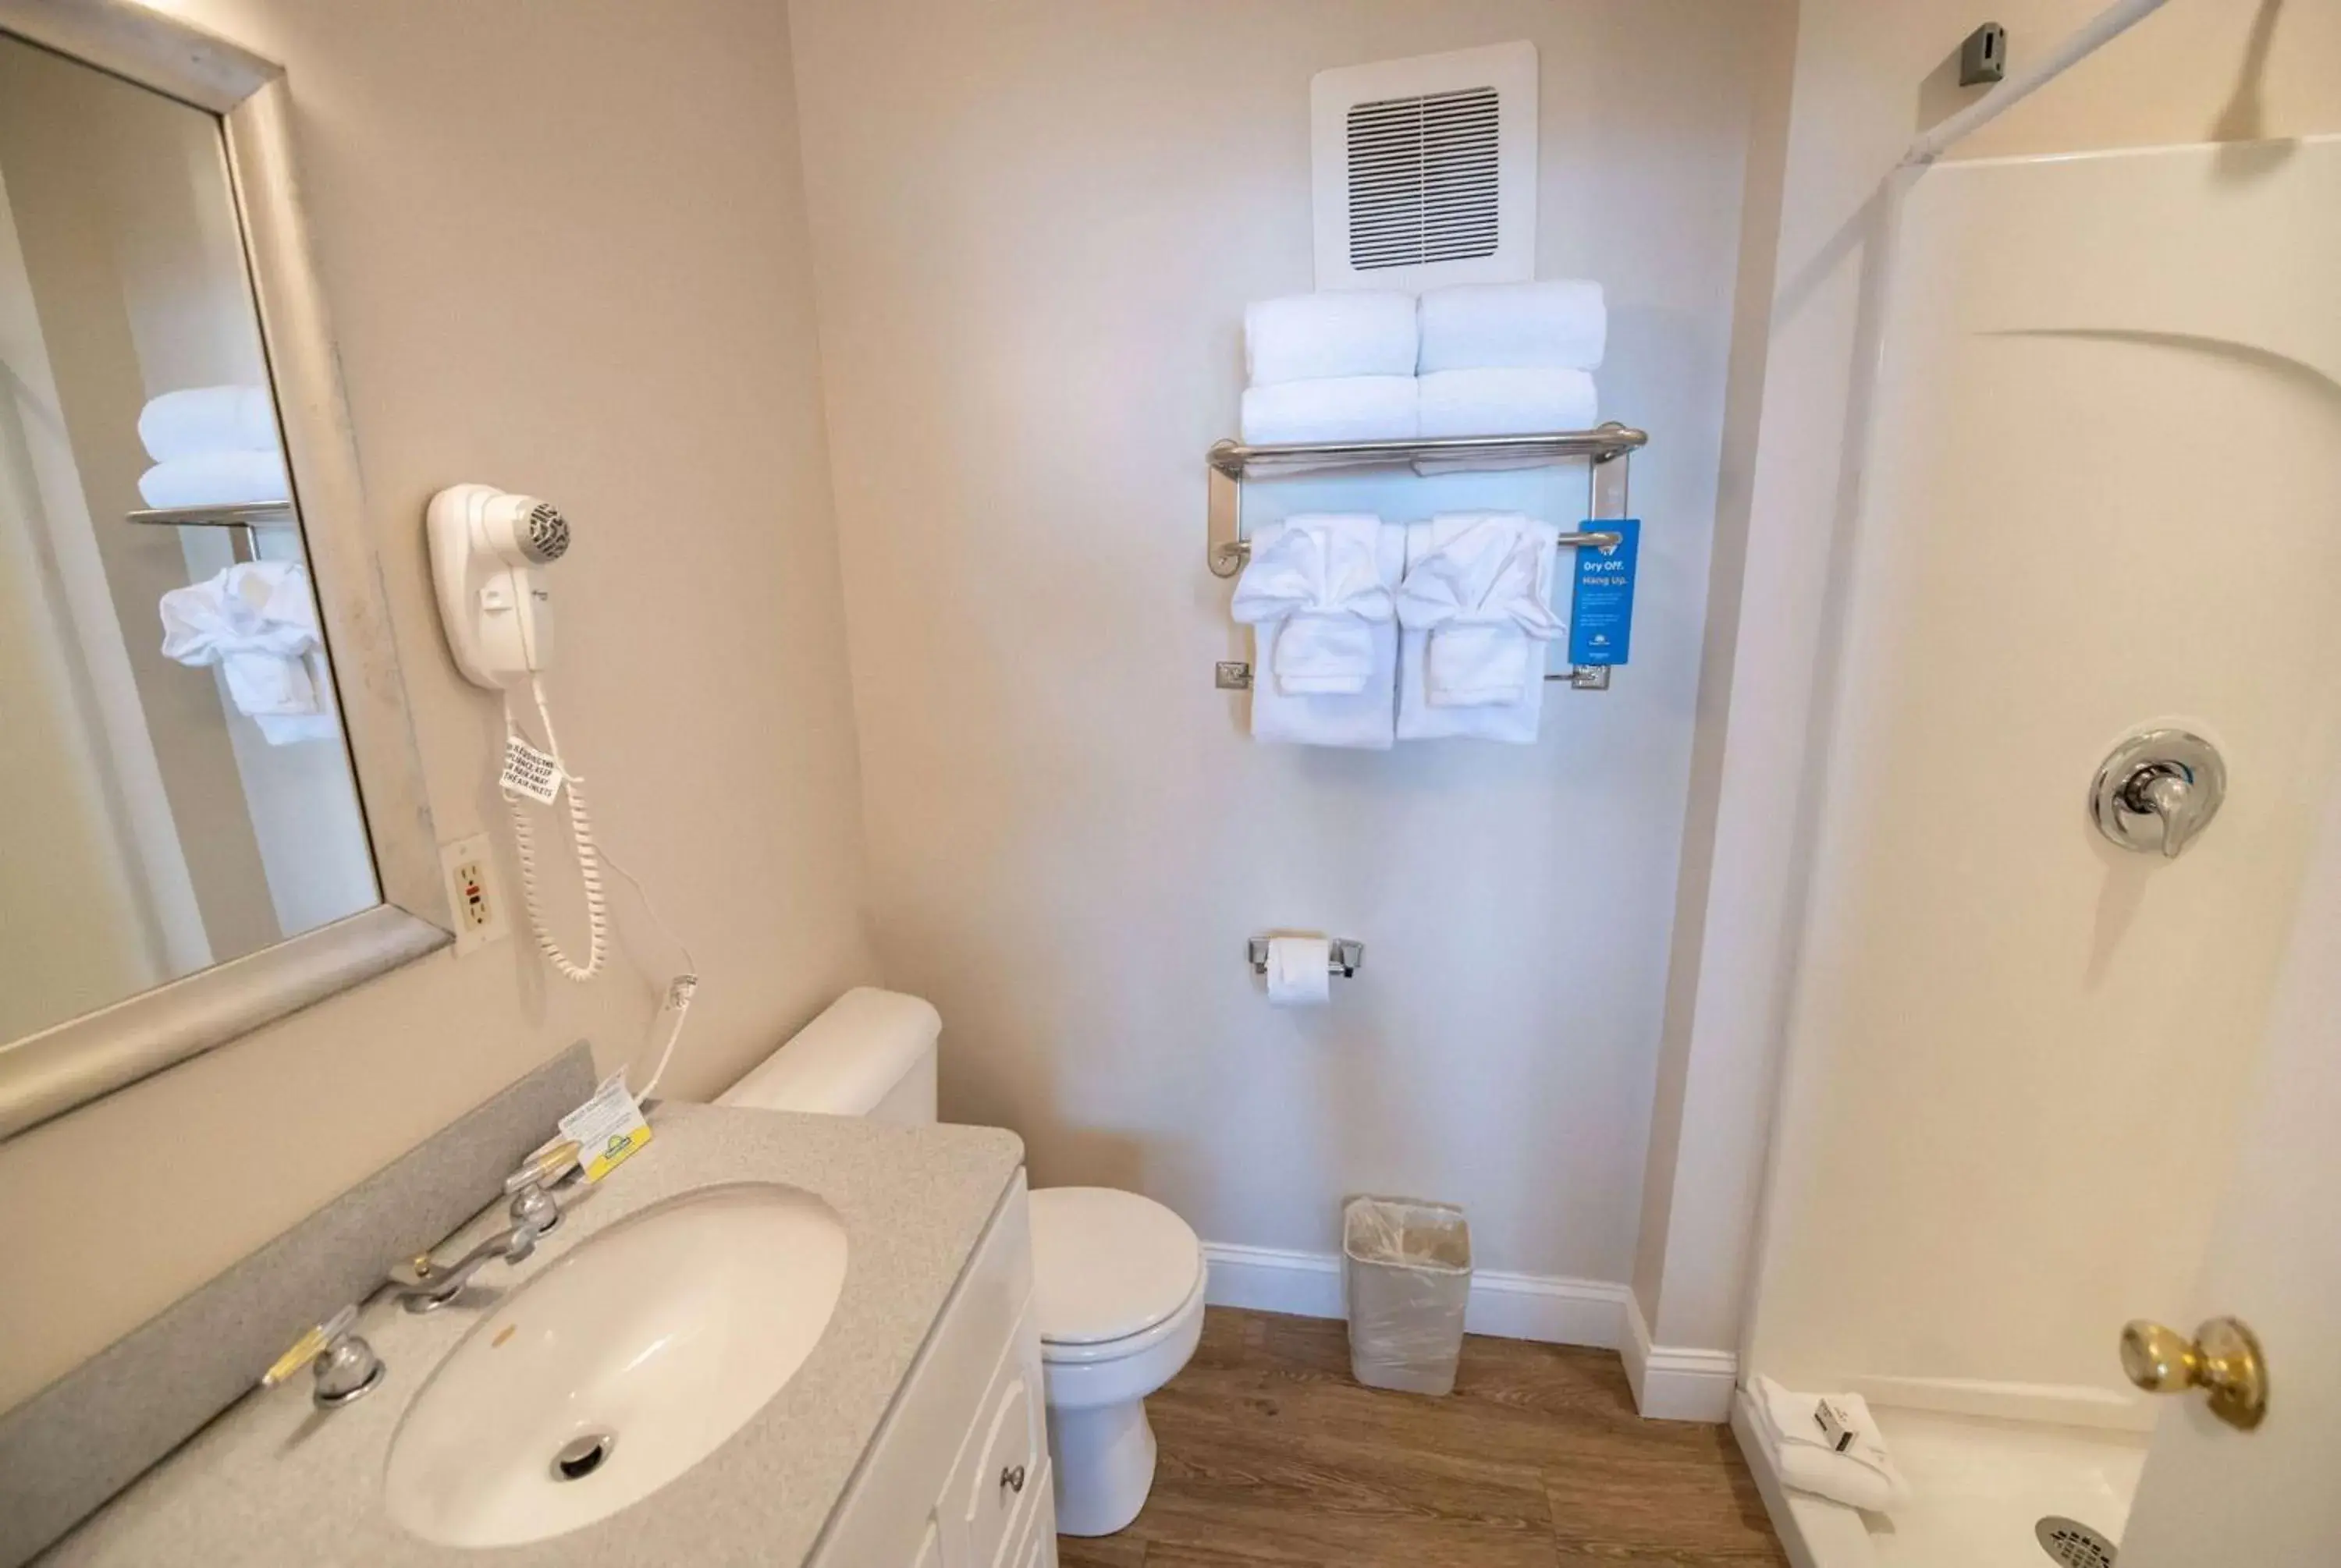 TV and multimedia, Bathroom in Days Inn by Wyndham Bar Harbor